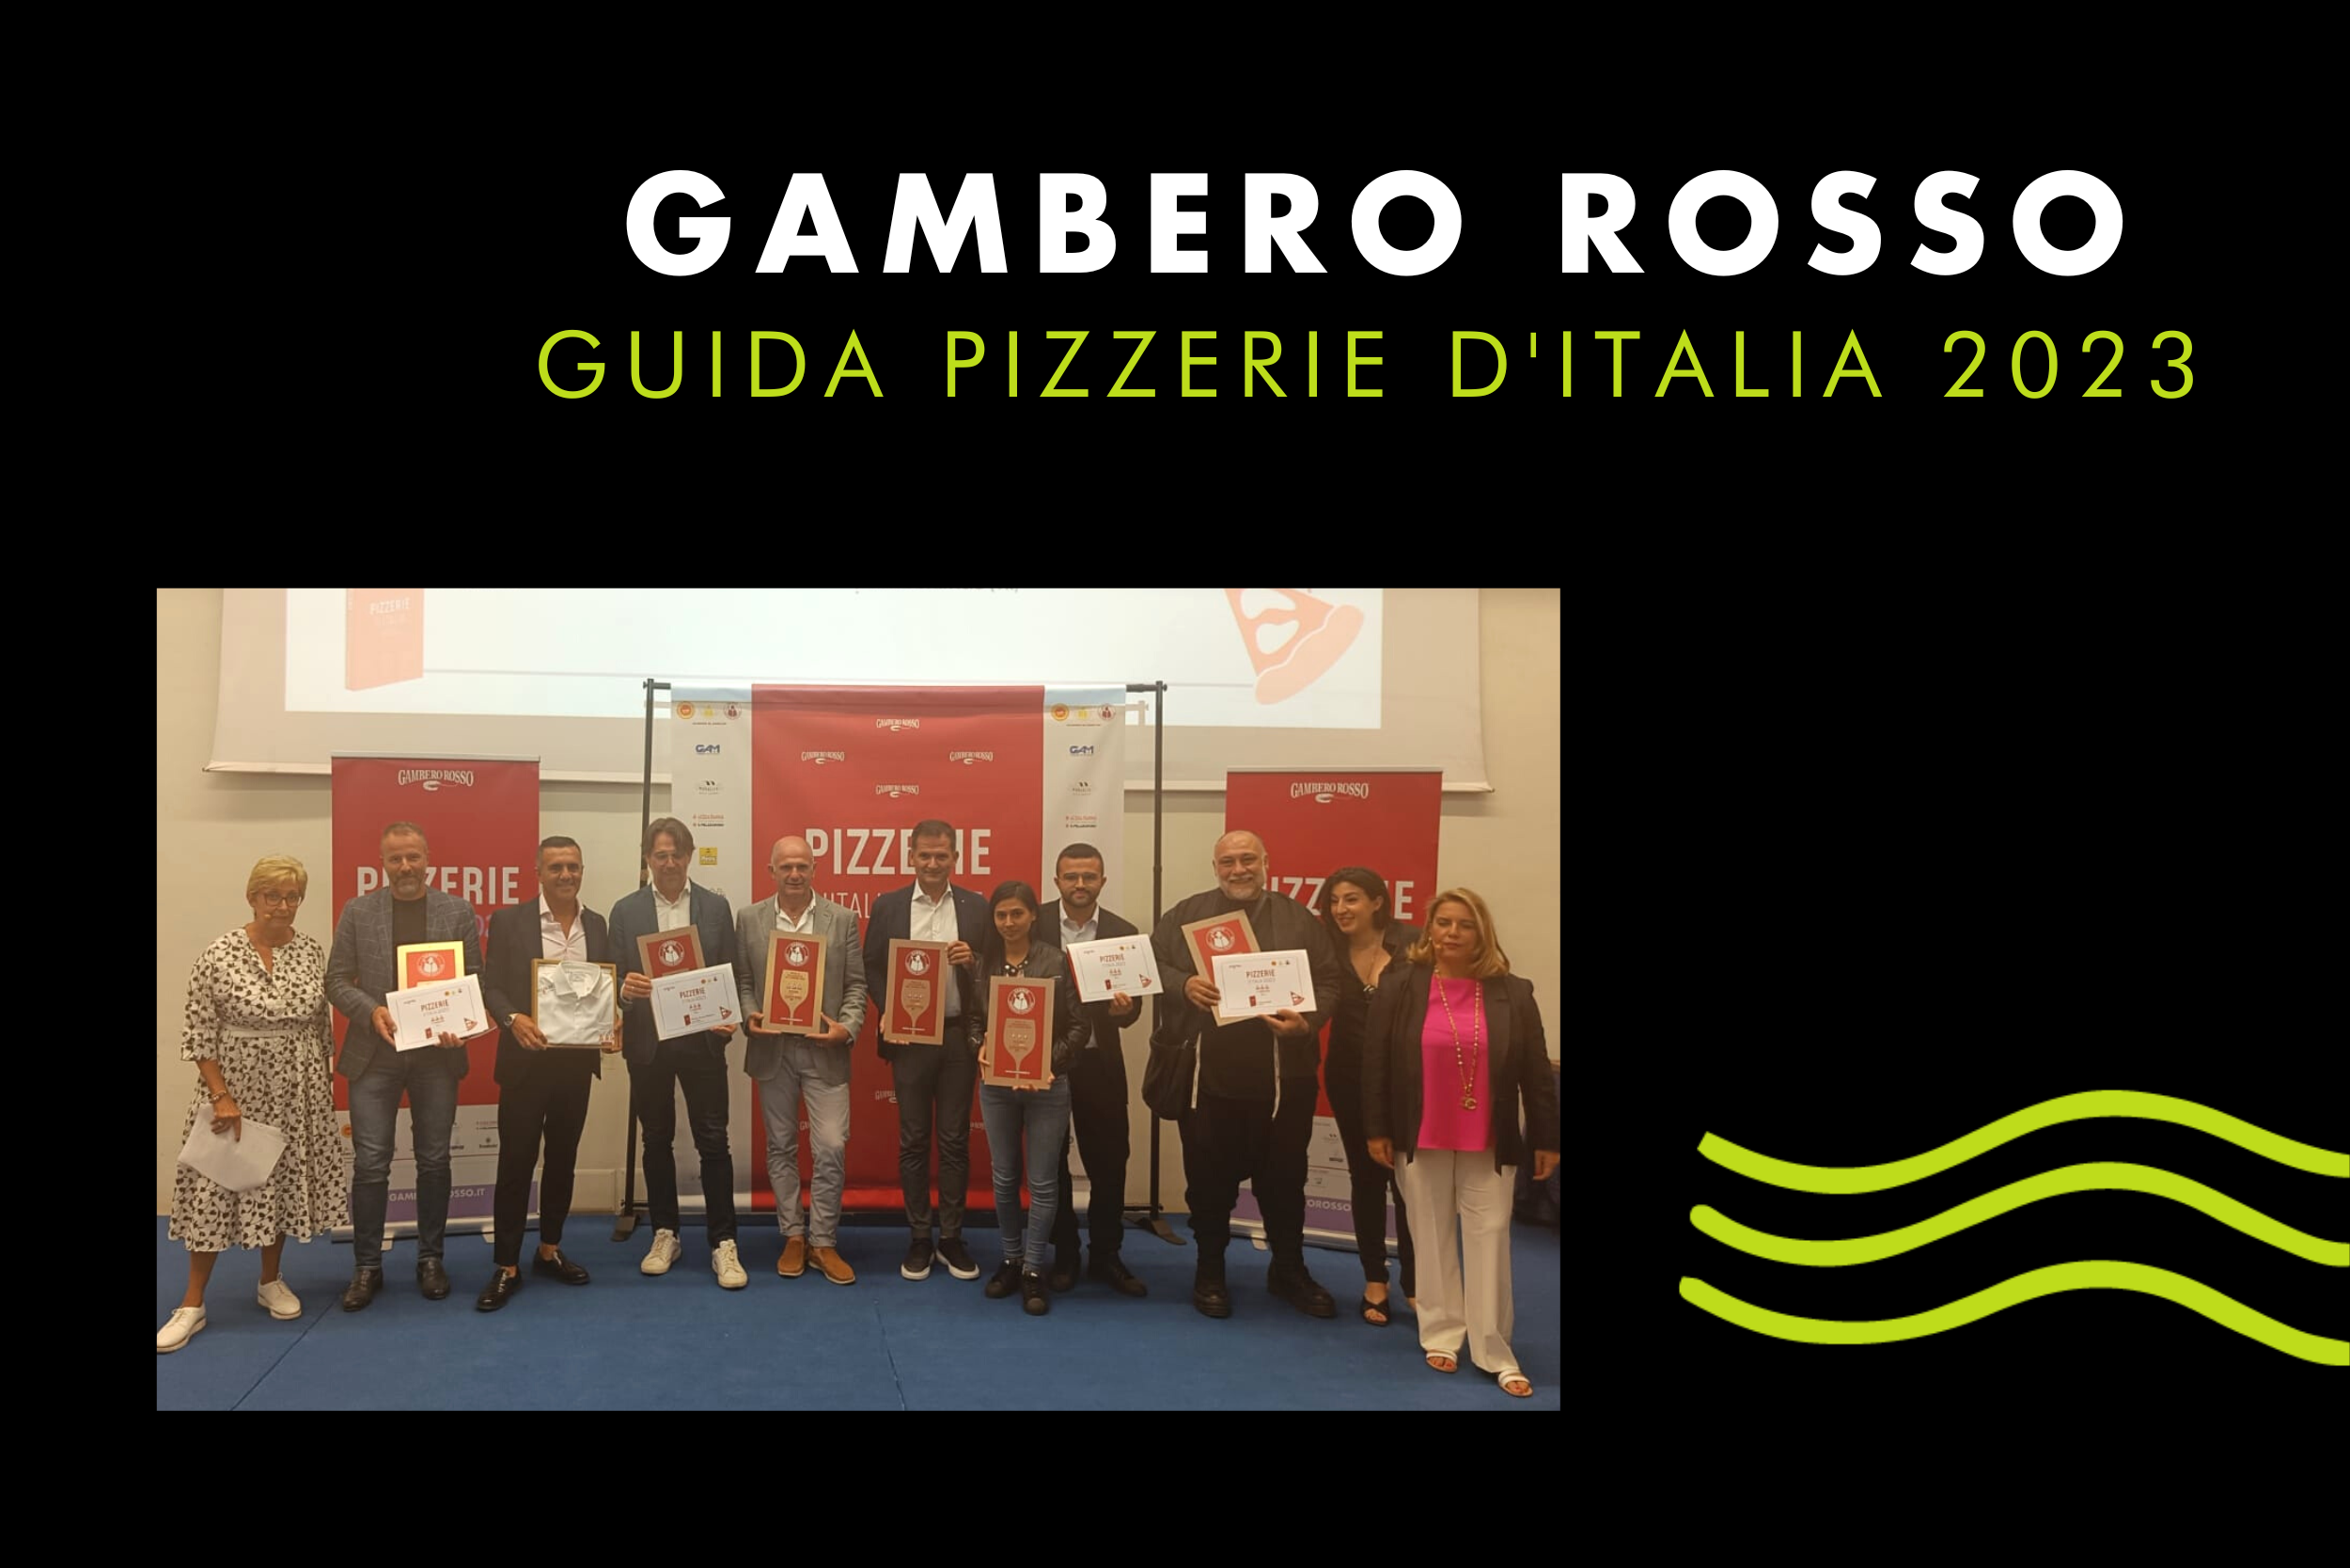 AROMI e l’élite della pizzeria italiana sulla guida Gambero Rosso 2023